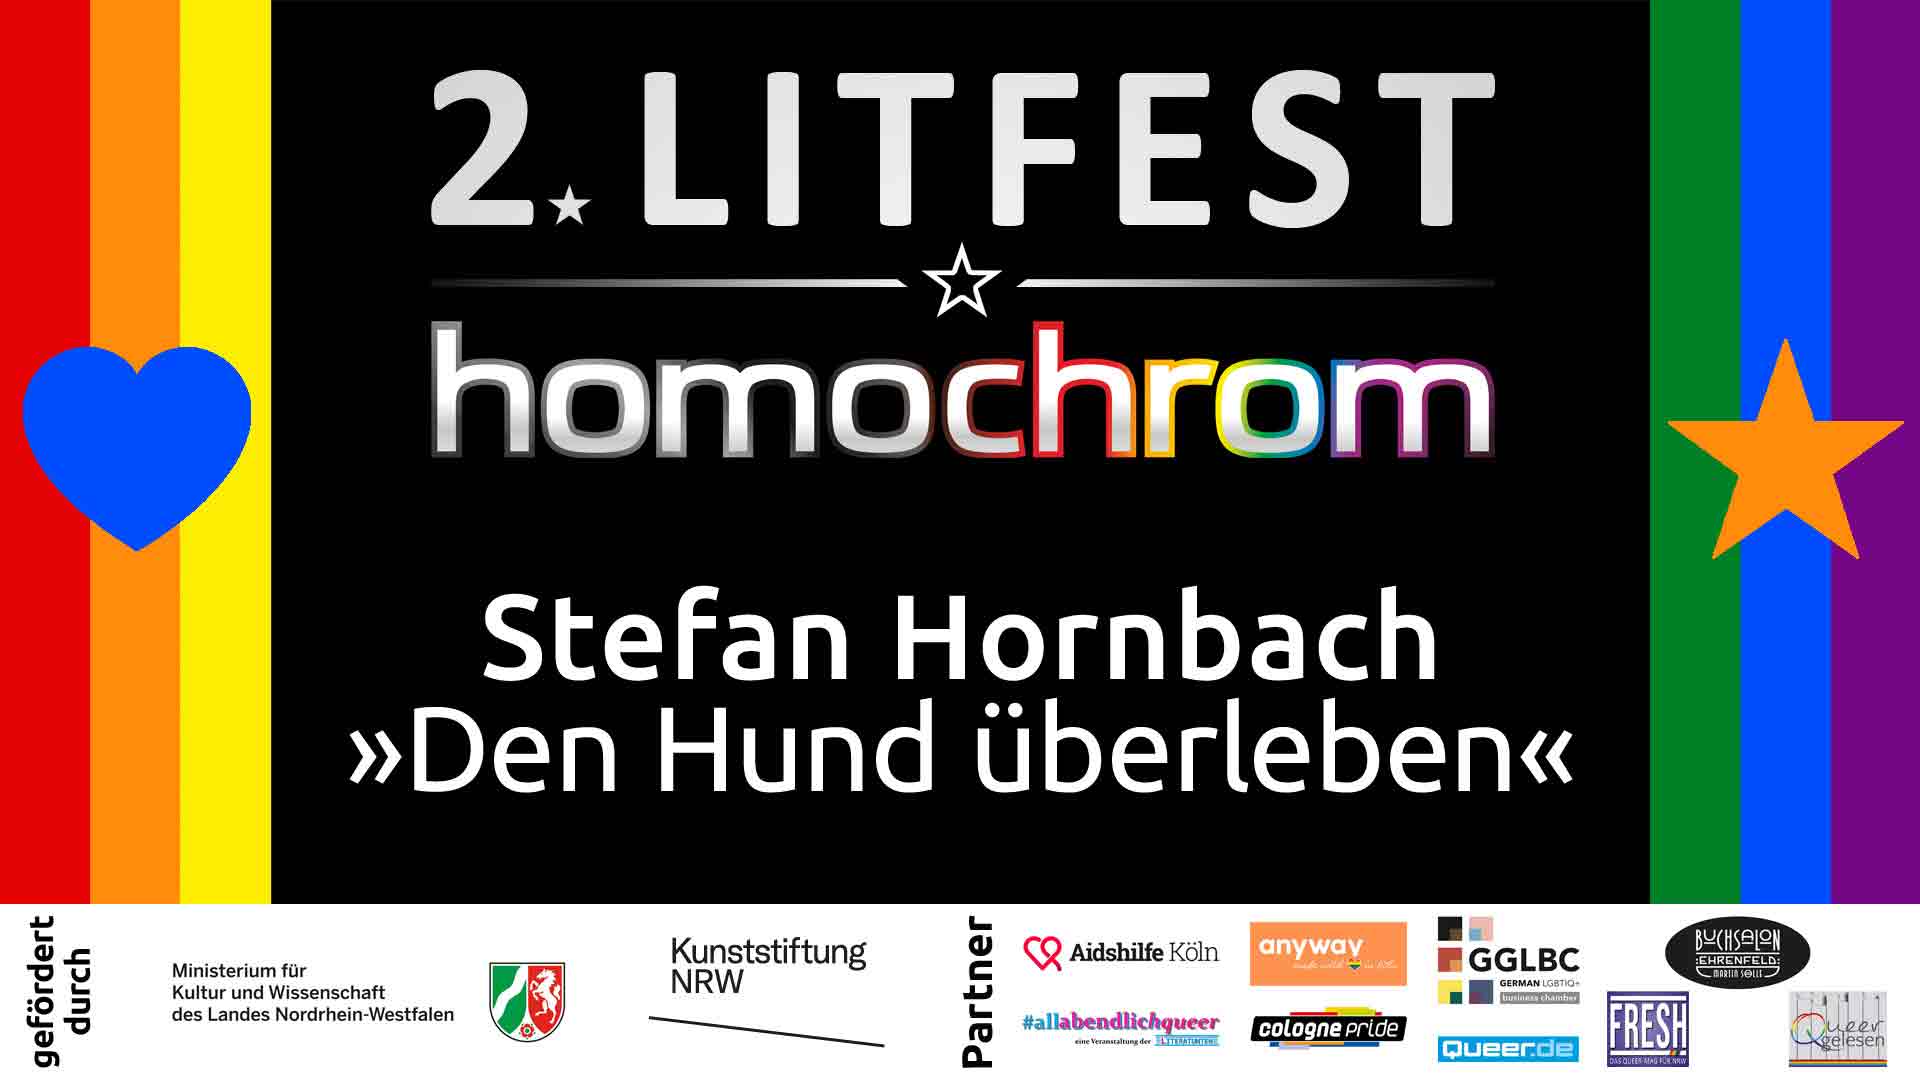 Youtube Video, Stefan Hornbach, 2. Litfest homochrom